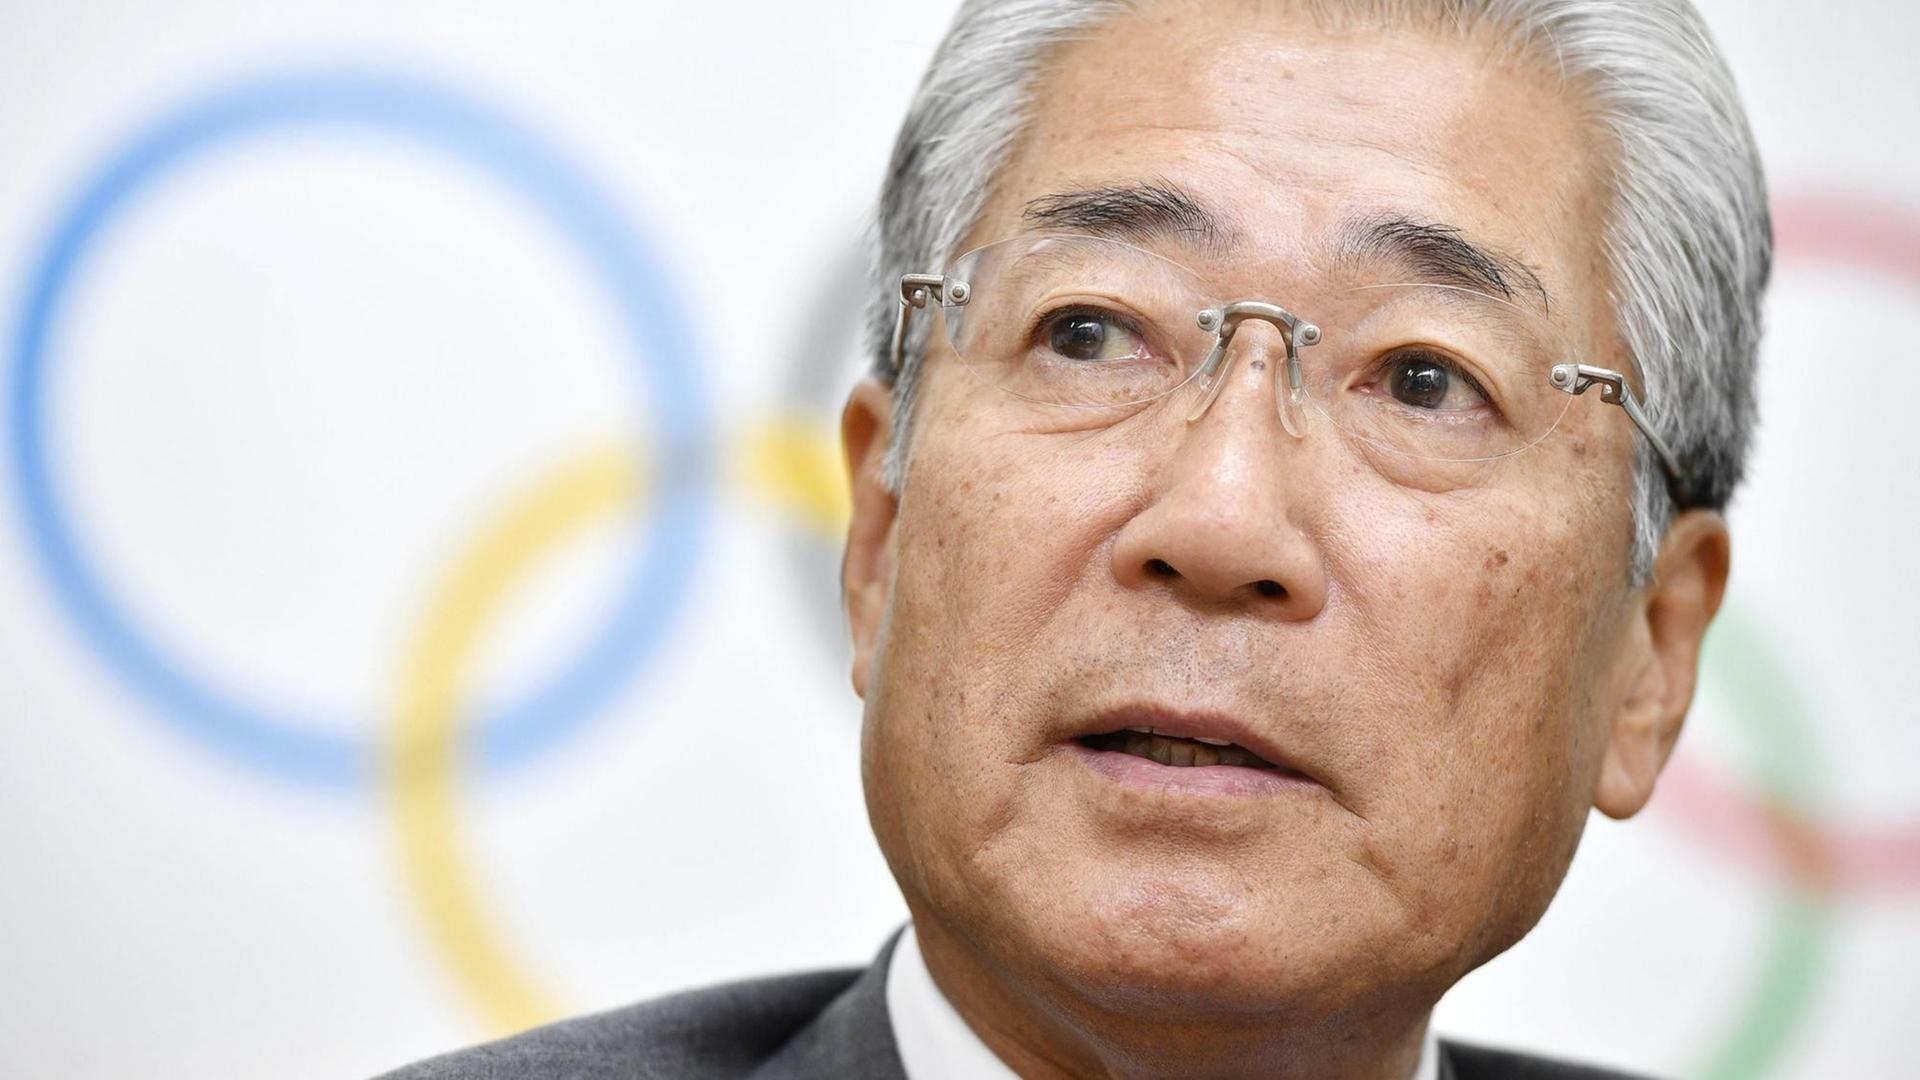 Der Präsident des japanischen Olympia-Komitees Takeda im Porträt, dahinter die Olympischen Ringe.